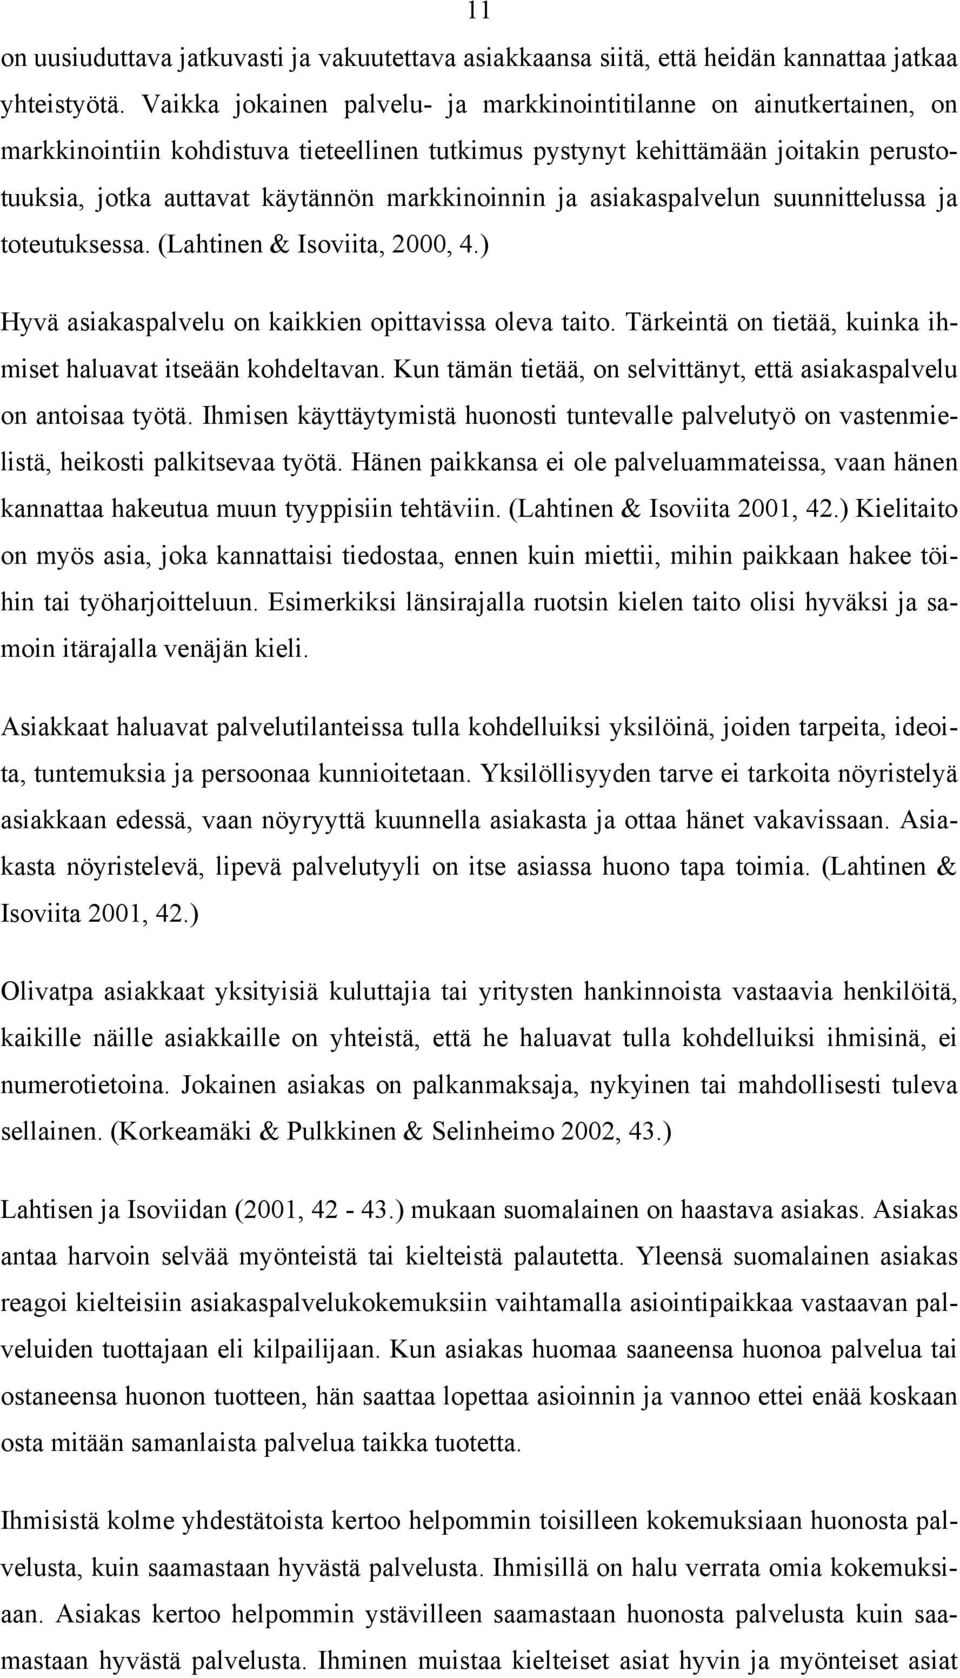 markkinoinnin ja asiakaspalvelun suunnittelussa ja toteutuksessa. (Lahtinen & Isoviita, 2000, 4.) Hyvä asiakaspalvelu on kaikkien opittavissa oleva taito.